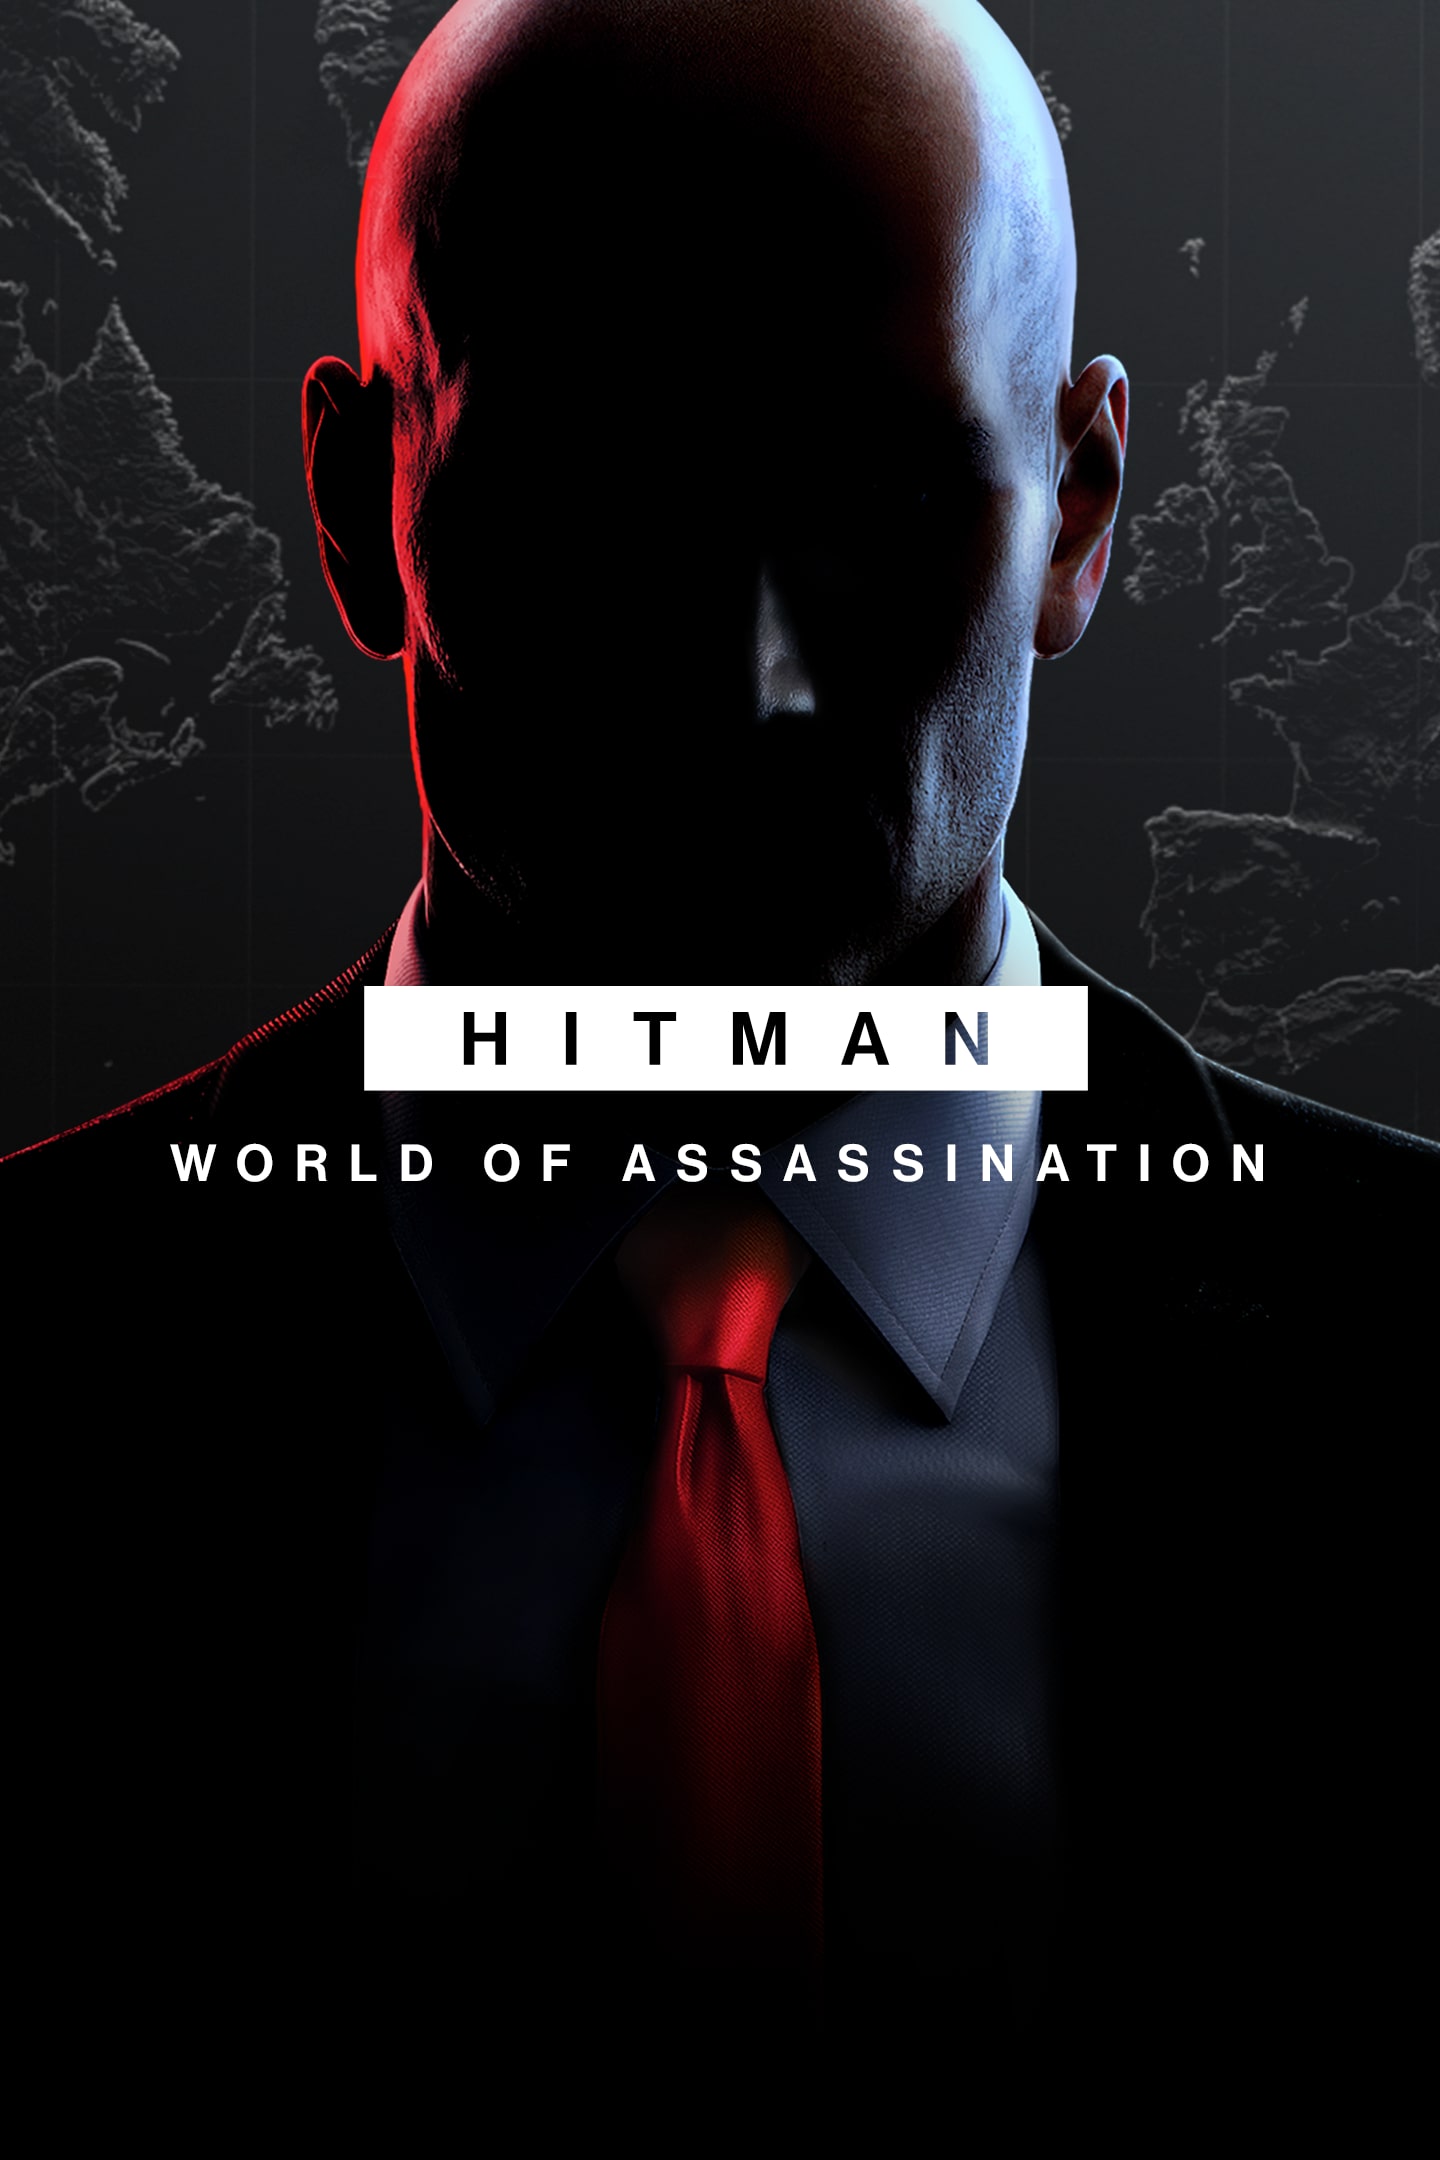 HITMAN 3 - PlayStation 4, PlayStation 4